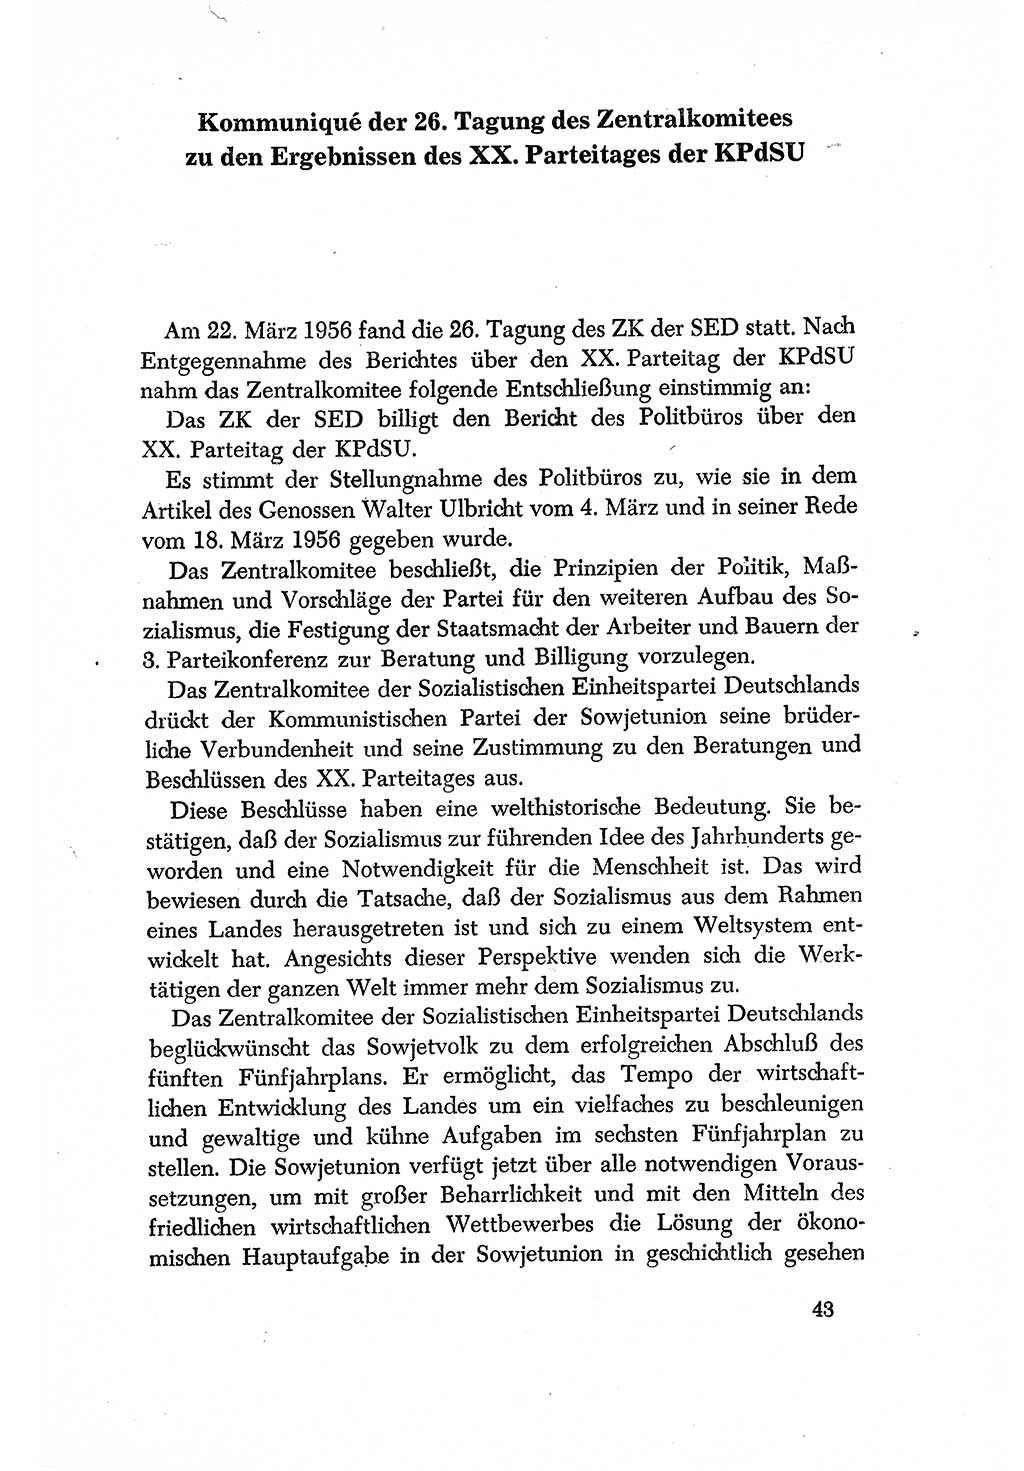 Dokumente der Sozialistischen Einheitspartei Deutschlands (SED) [Deutsche Demokratische Republik (DDR)] 1956-1957, Seite 43 (Dok. SED DDR 1956-1957, S. 43)